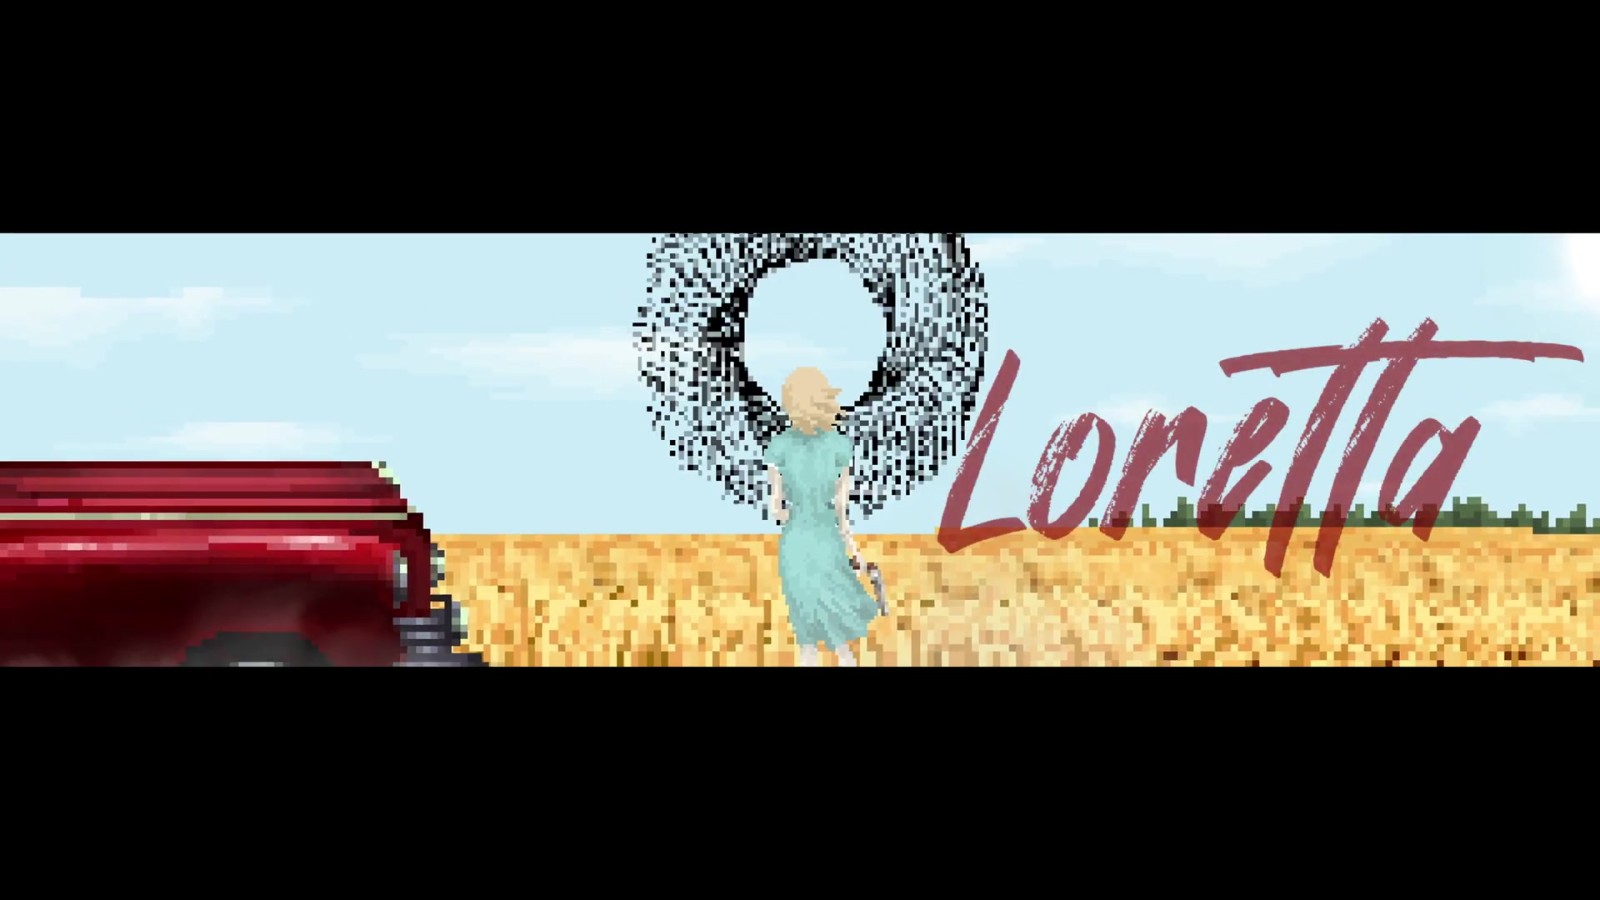 心理惊悚游戏《洛蕾塔》2月16日登陆PC平台 二次世界 第7张